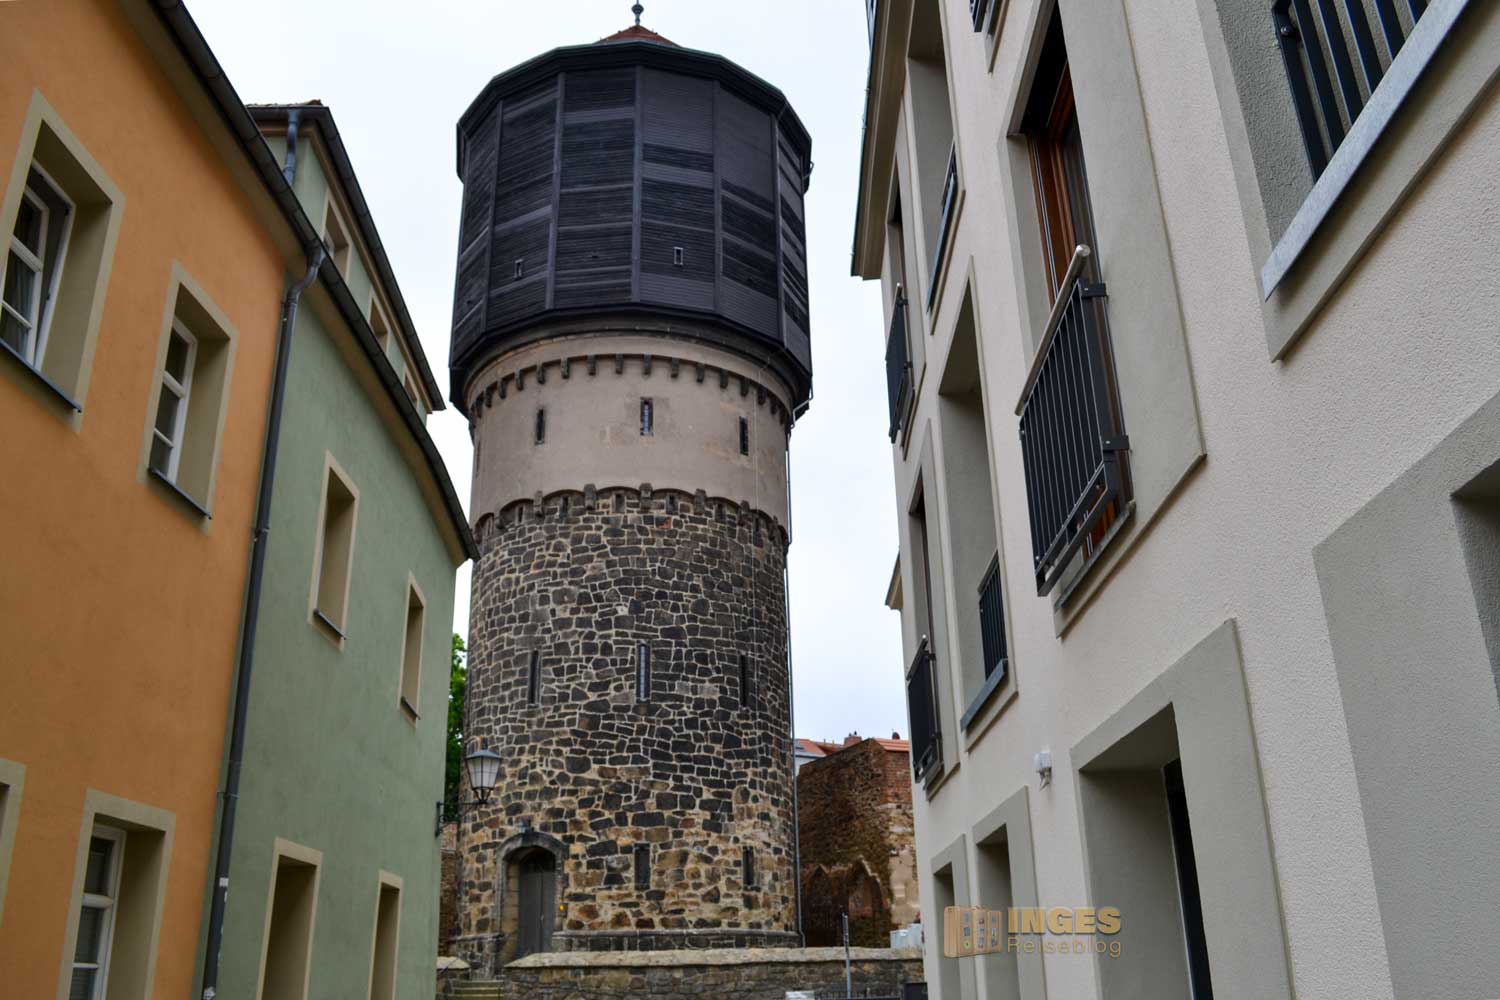 Wasserturm in Bautzen